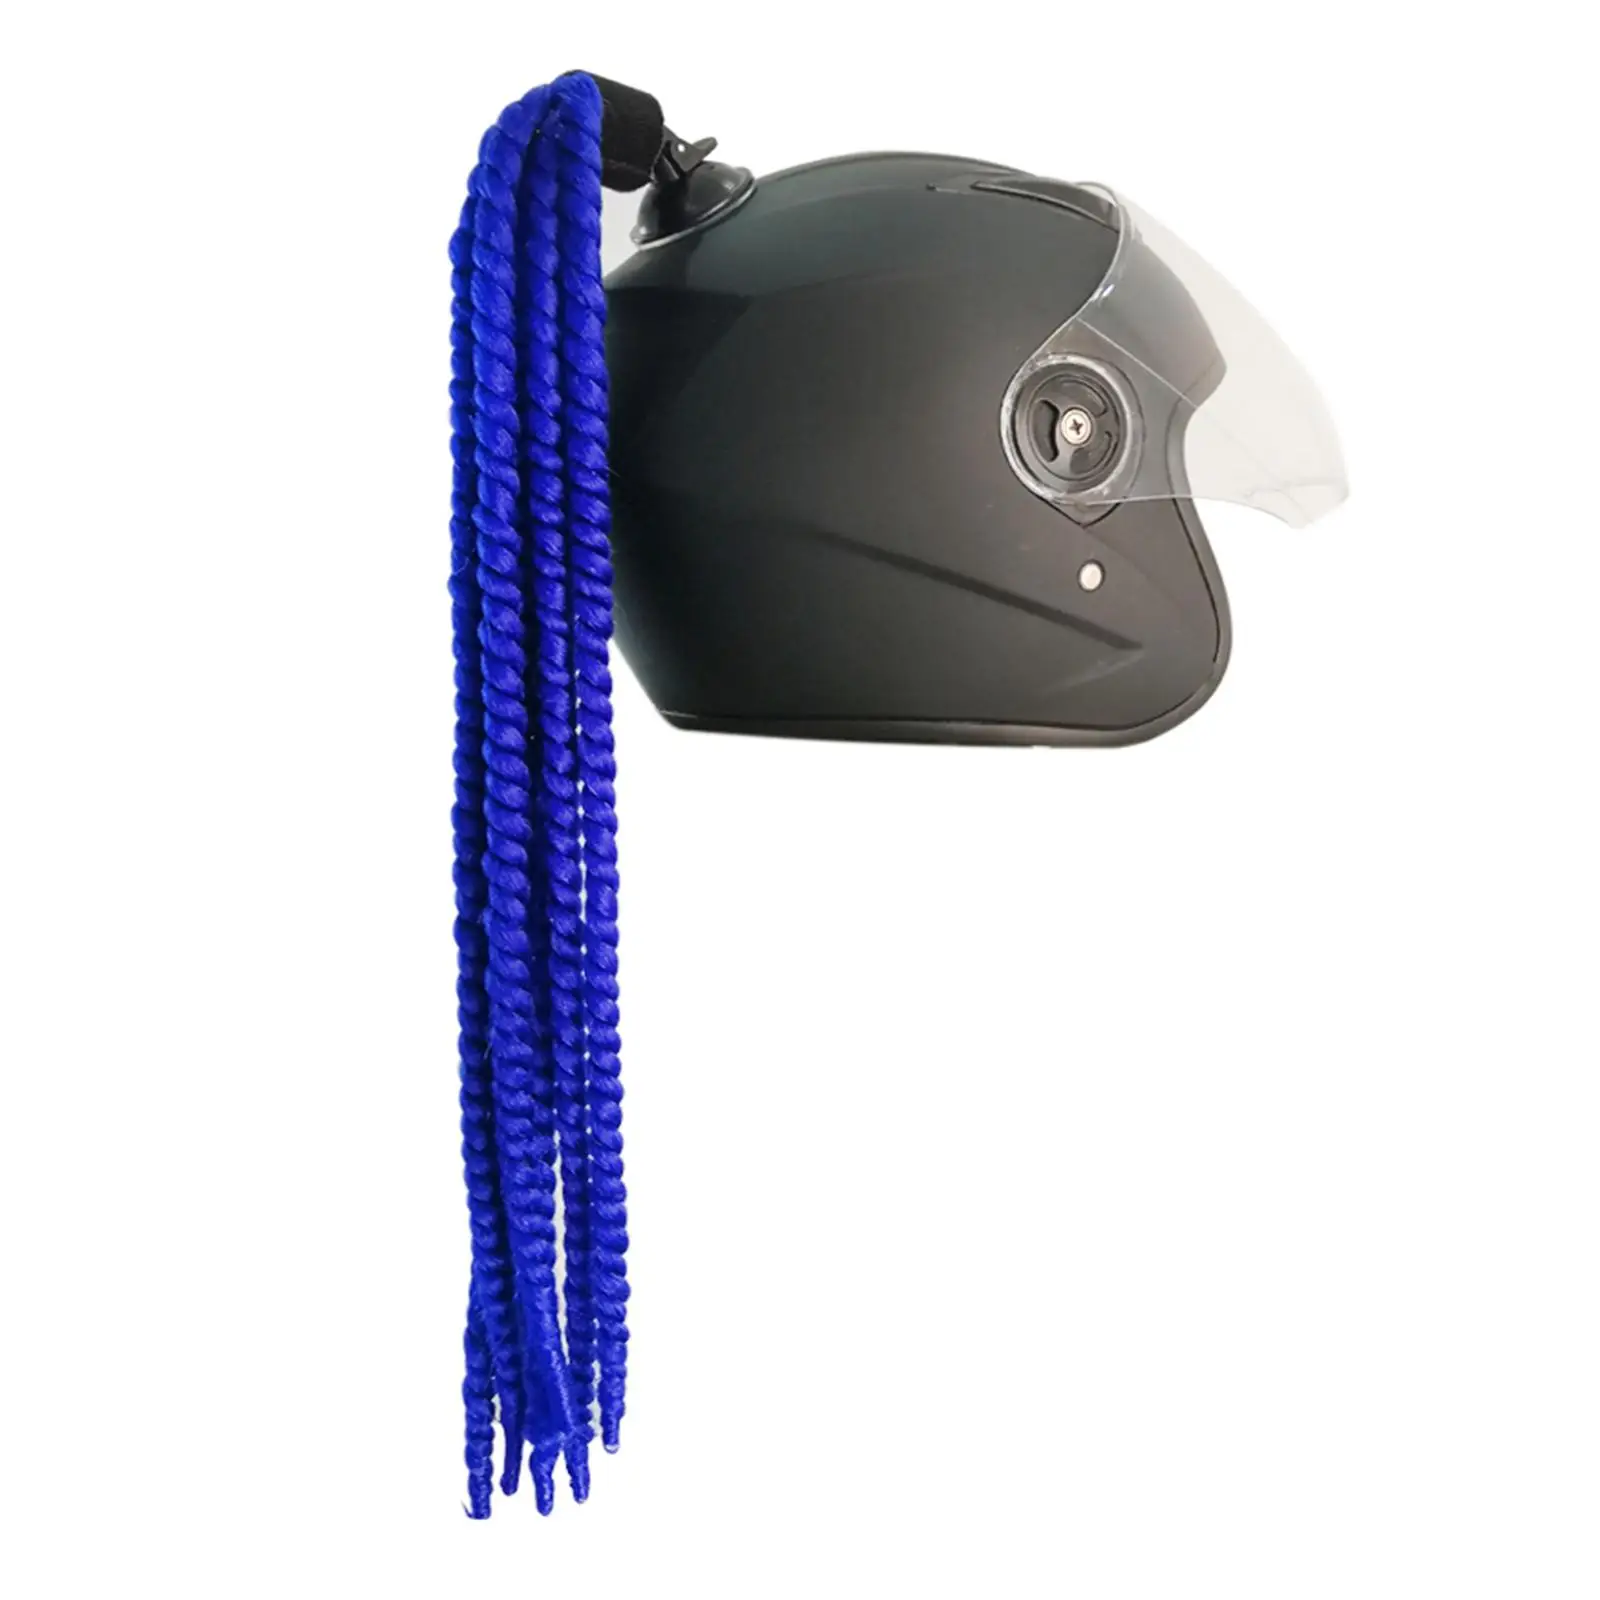 Motocross Bicycle Helmet Pigtail Braids Curly Wig Hair Helmet Braid 60cm